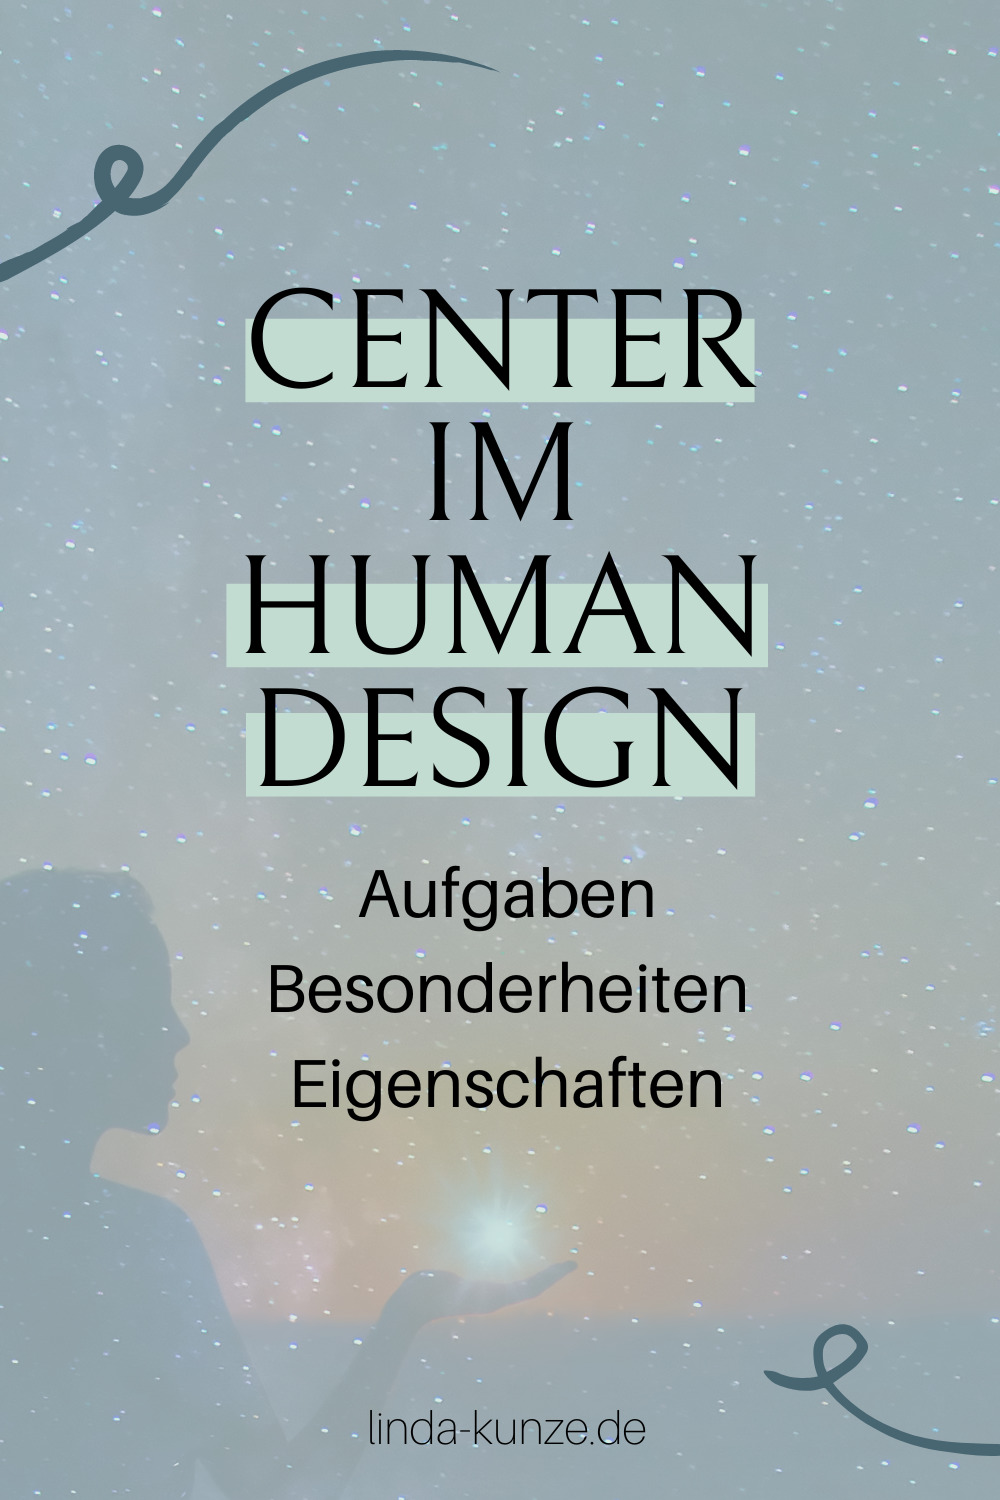 Aufgaben der Human Design Center